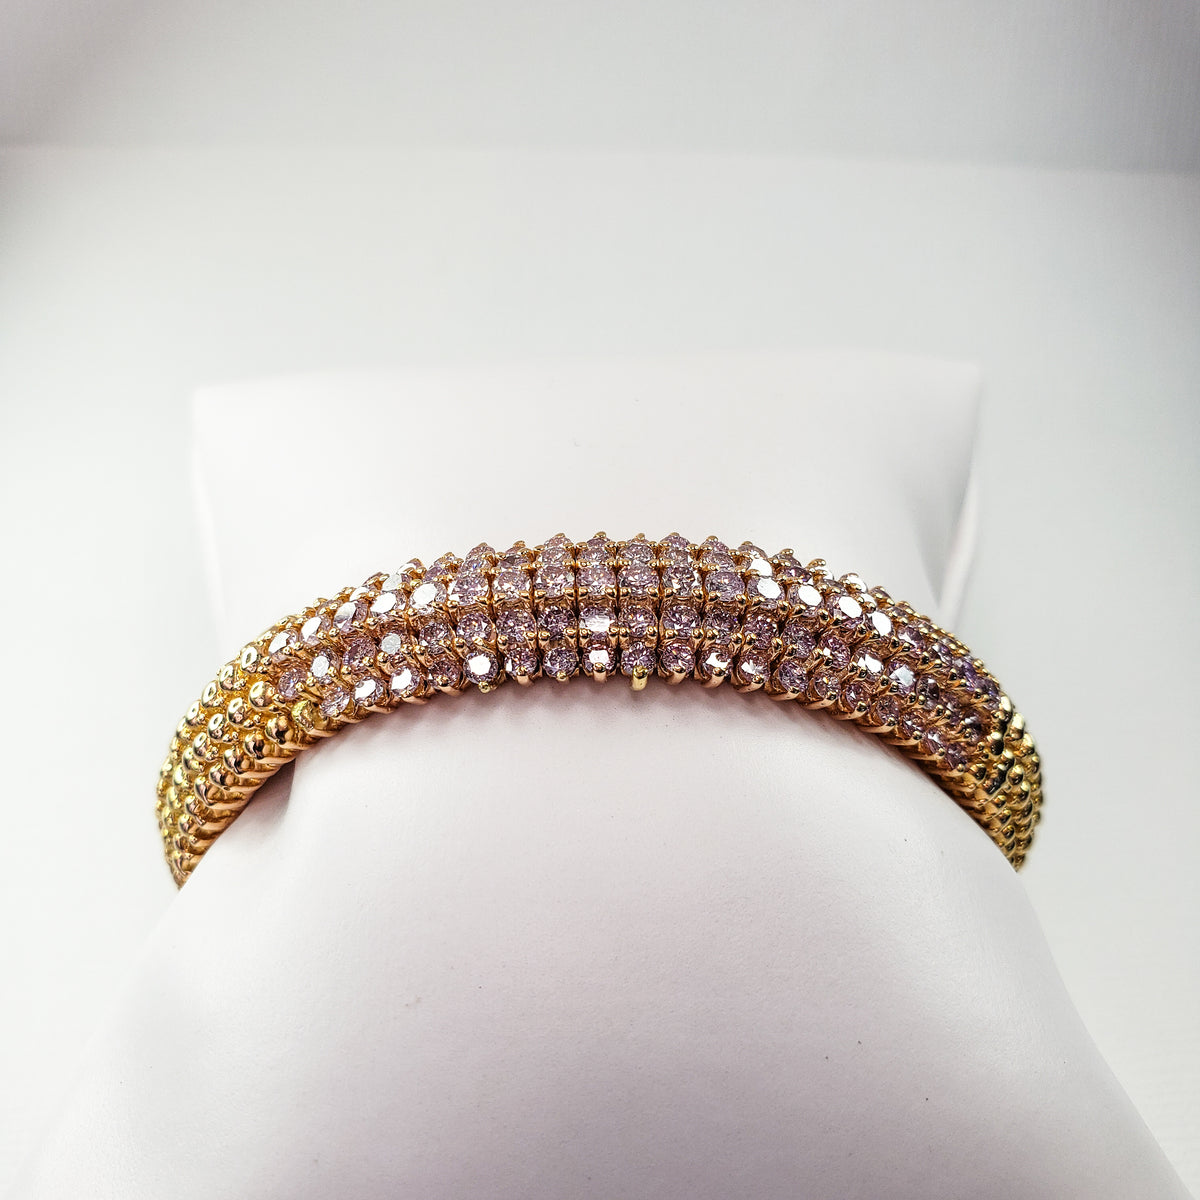 Natural Fancy Pink Diamond Bangle Bracelet made in 18K Rose Gold